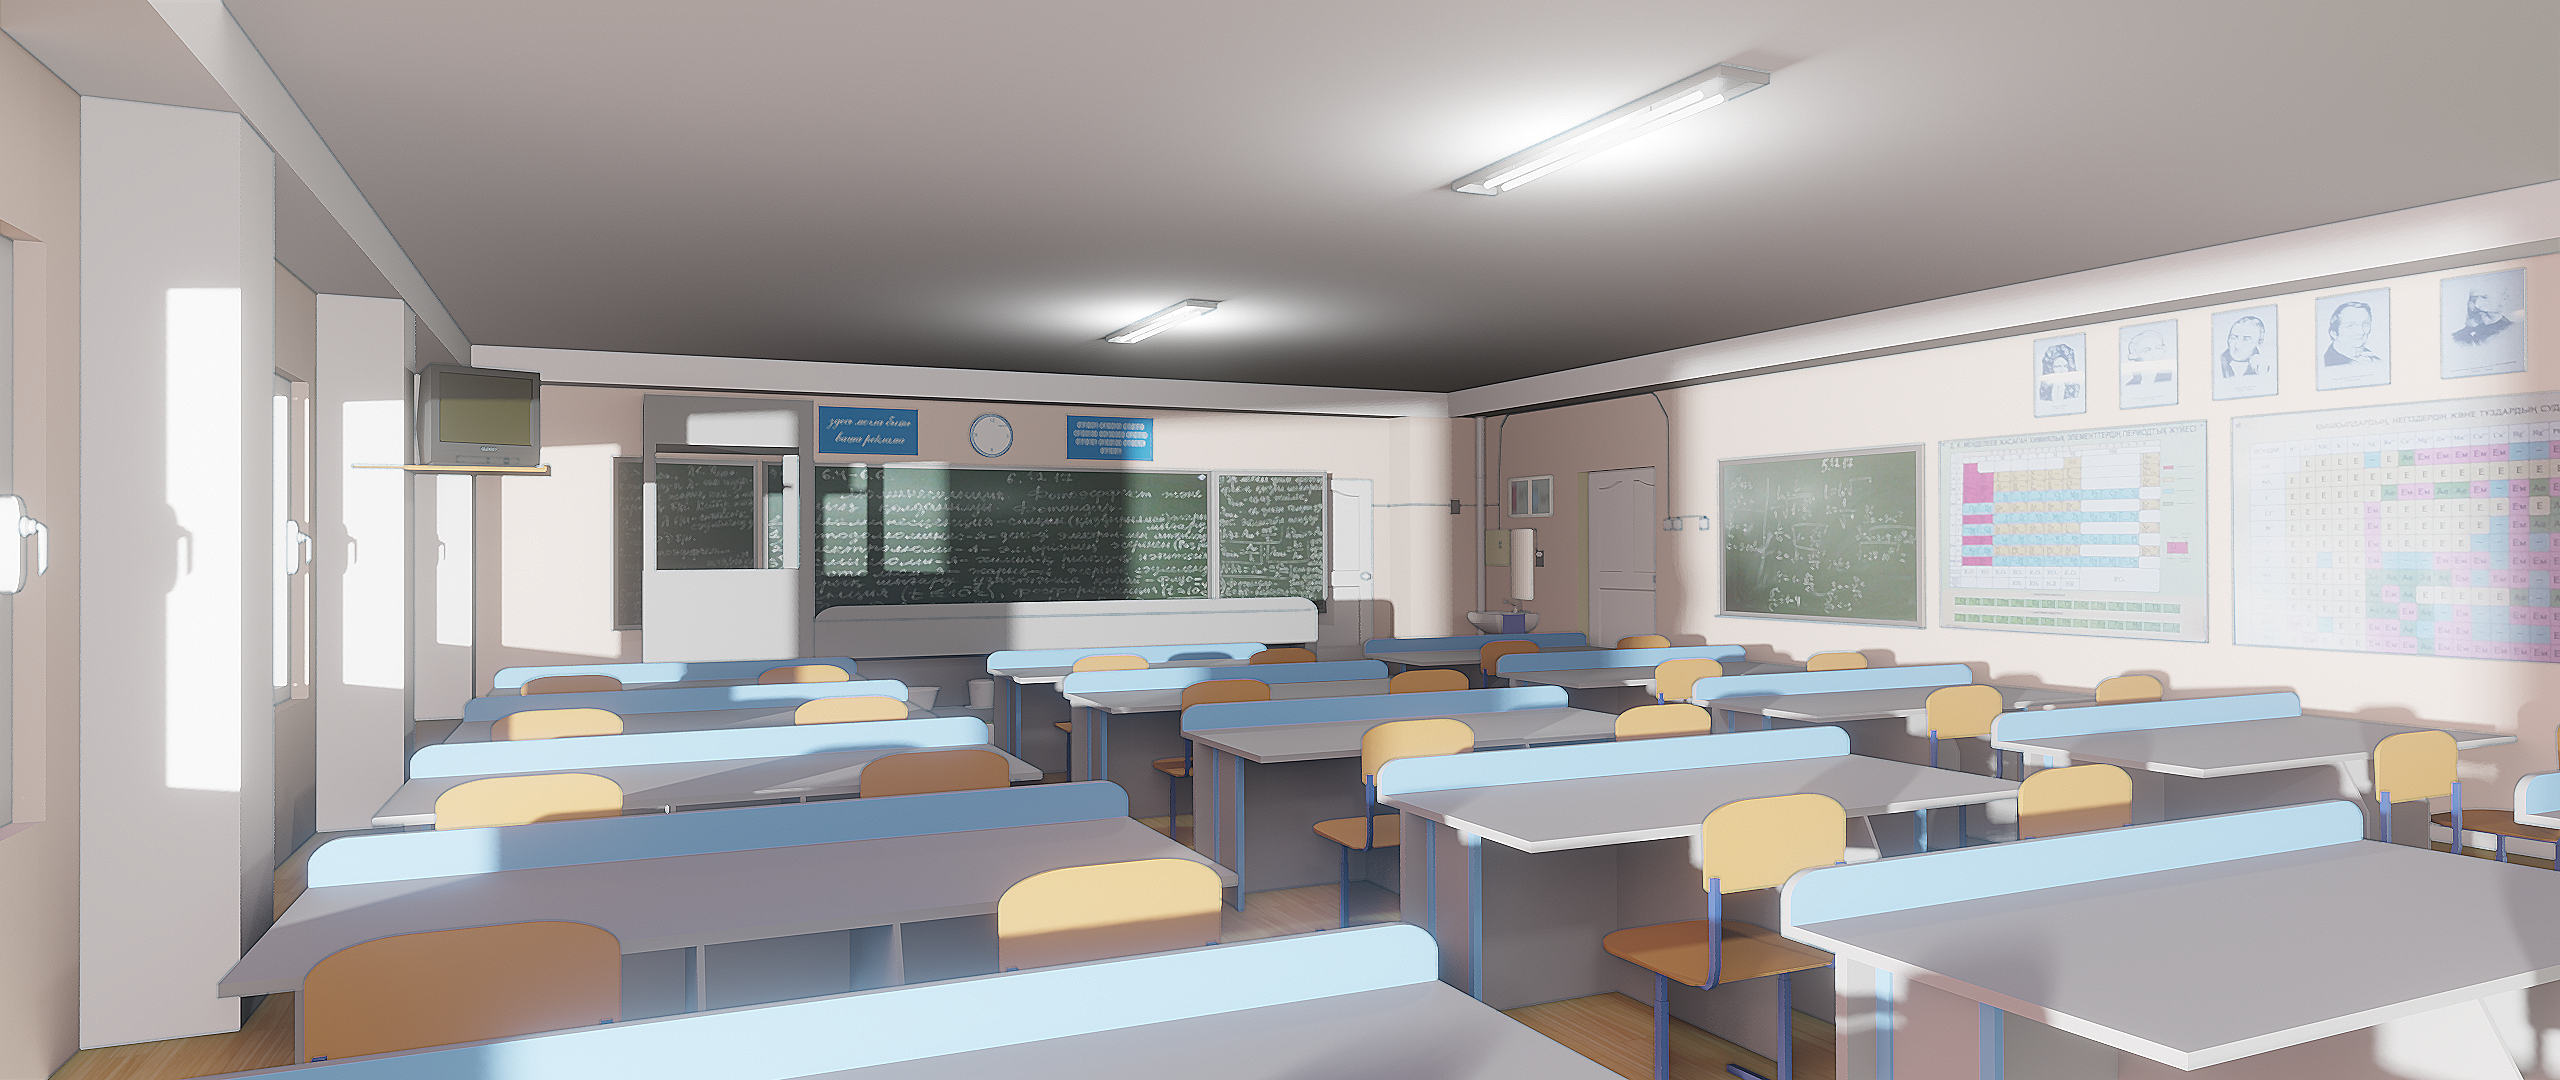 Школьный коридор в стиле аниме